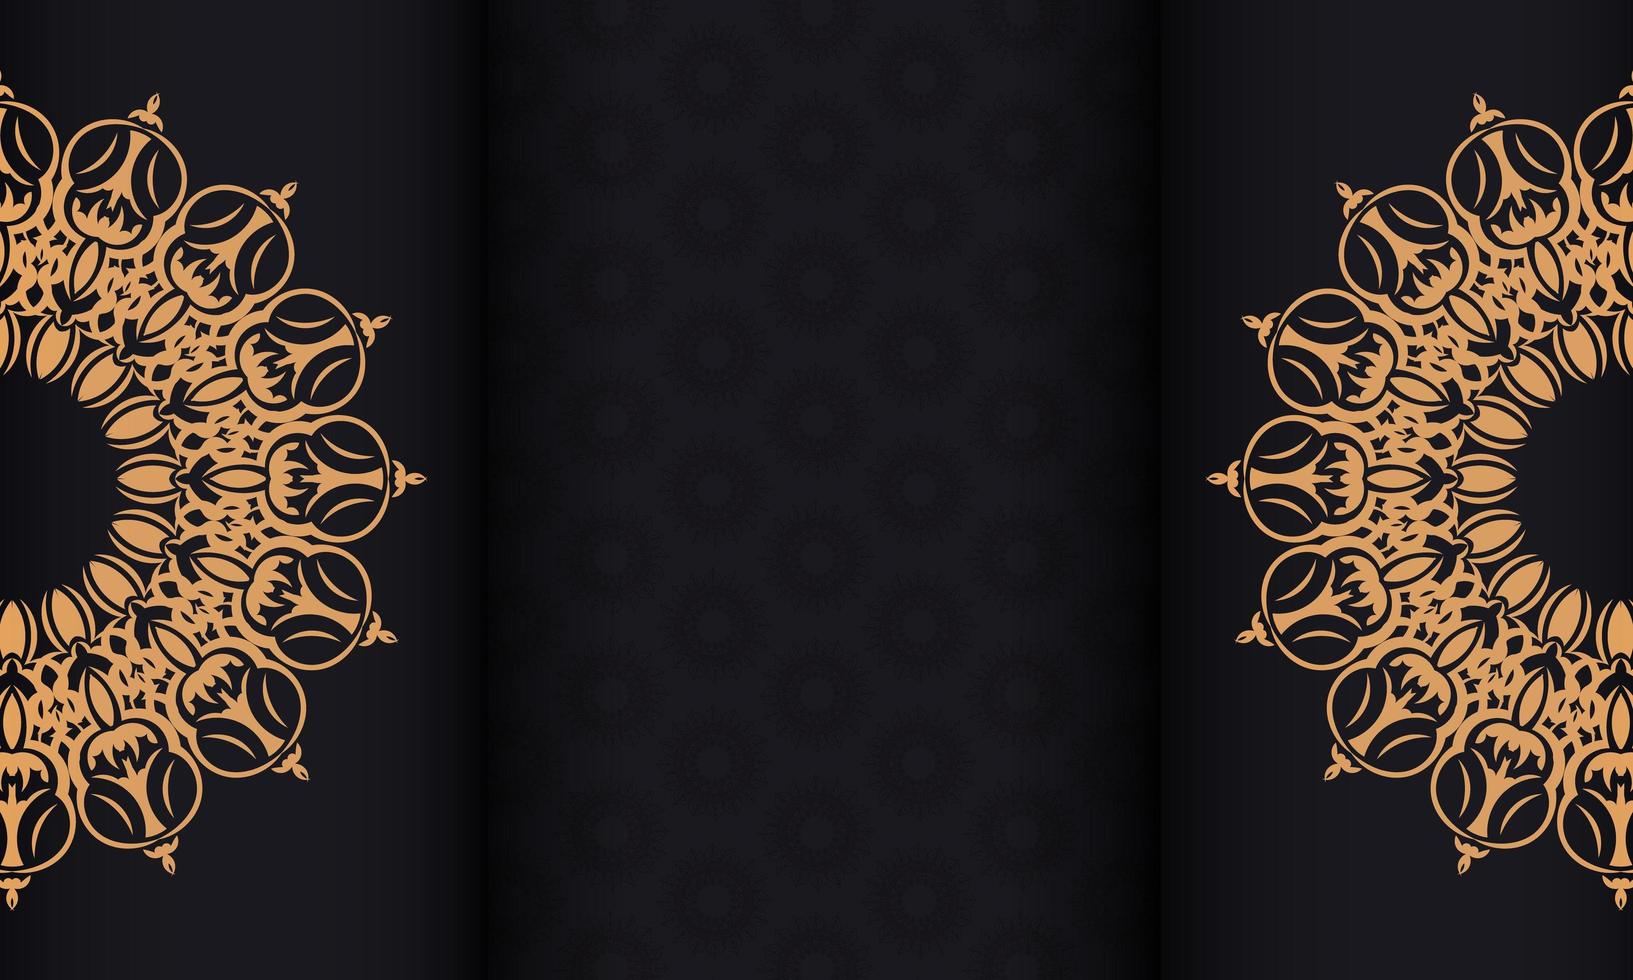 faixa preta com ornamentos luxuosos e coloque sob o texto. design de convite pronto para impressão com padrões vintage. vetor